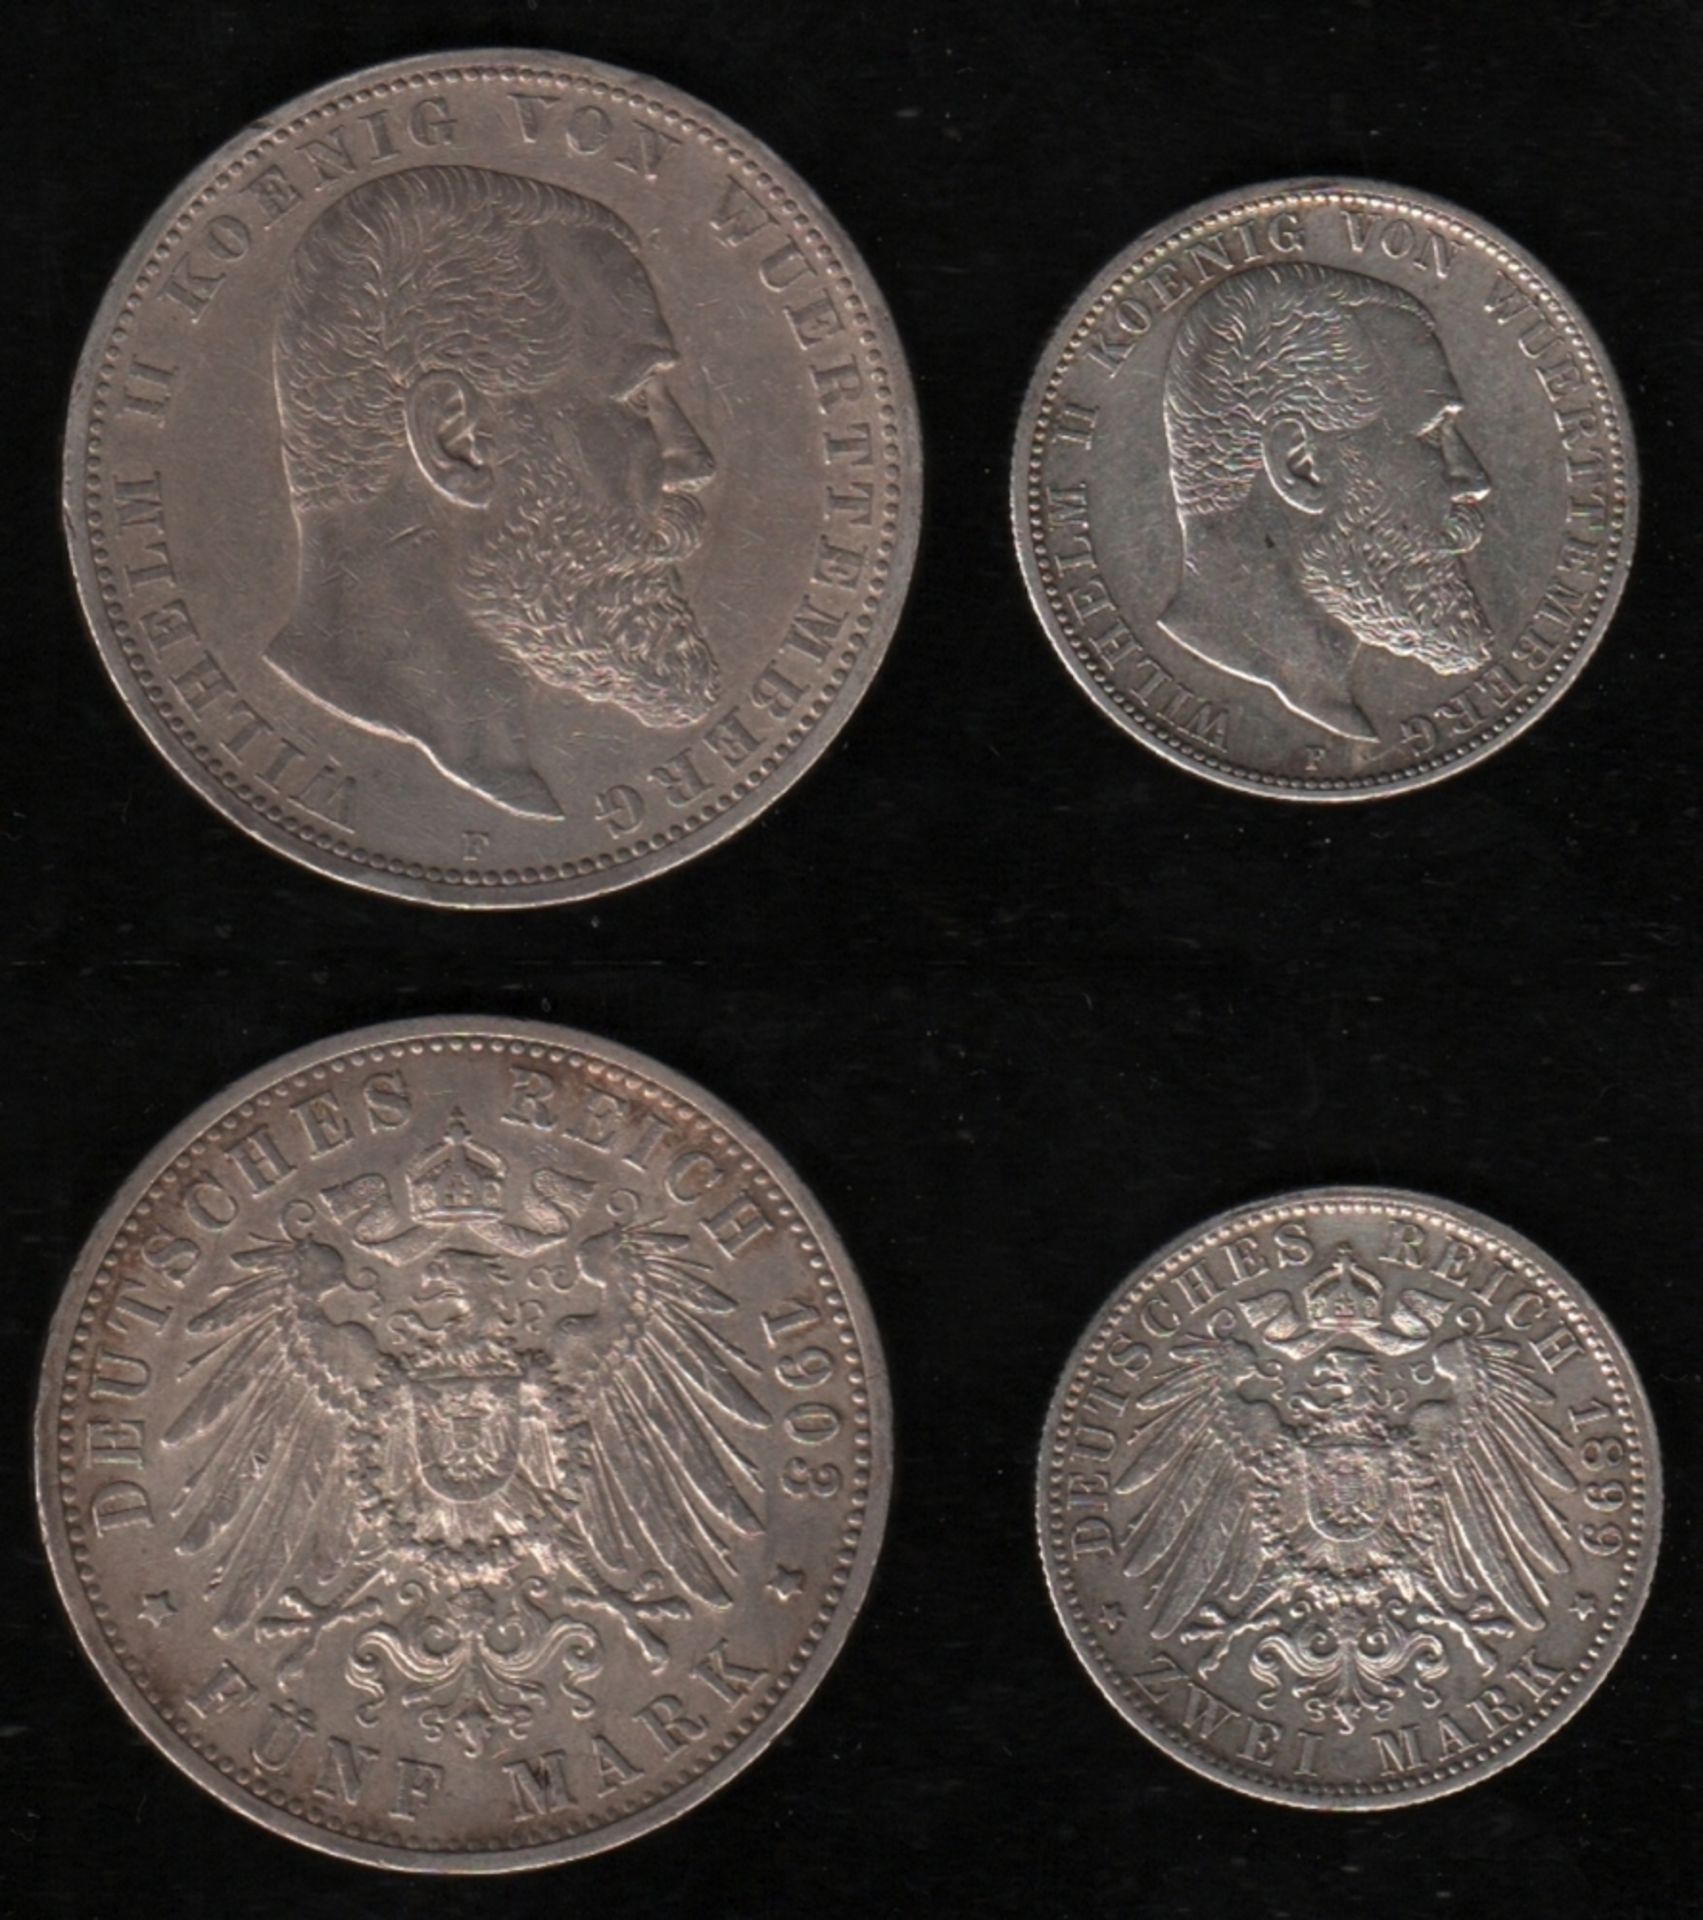 Deutsches Reich. Silbermünze. 5 Mark. Wilhelm II., König von Württemberg. F 1903. Vorderseite: